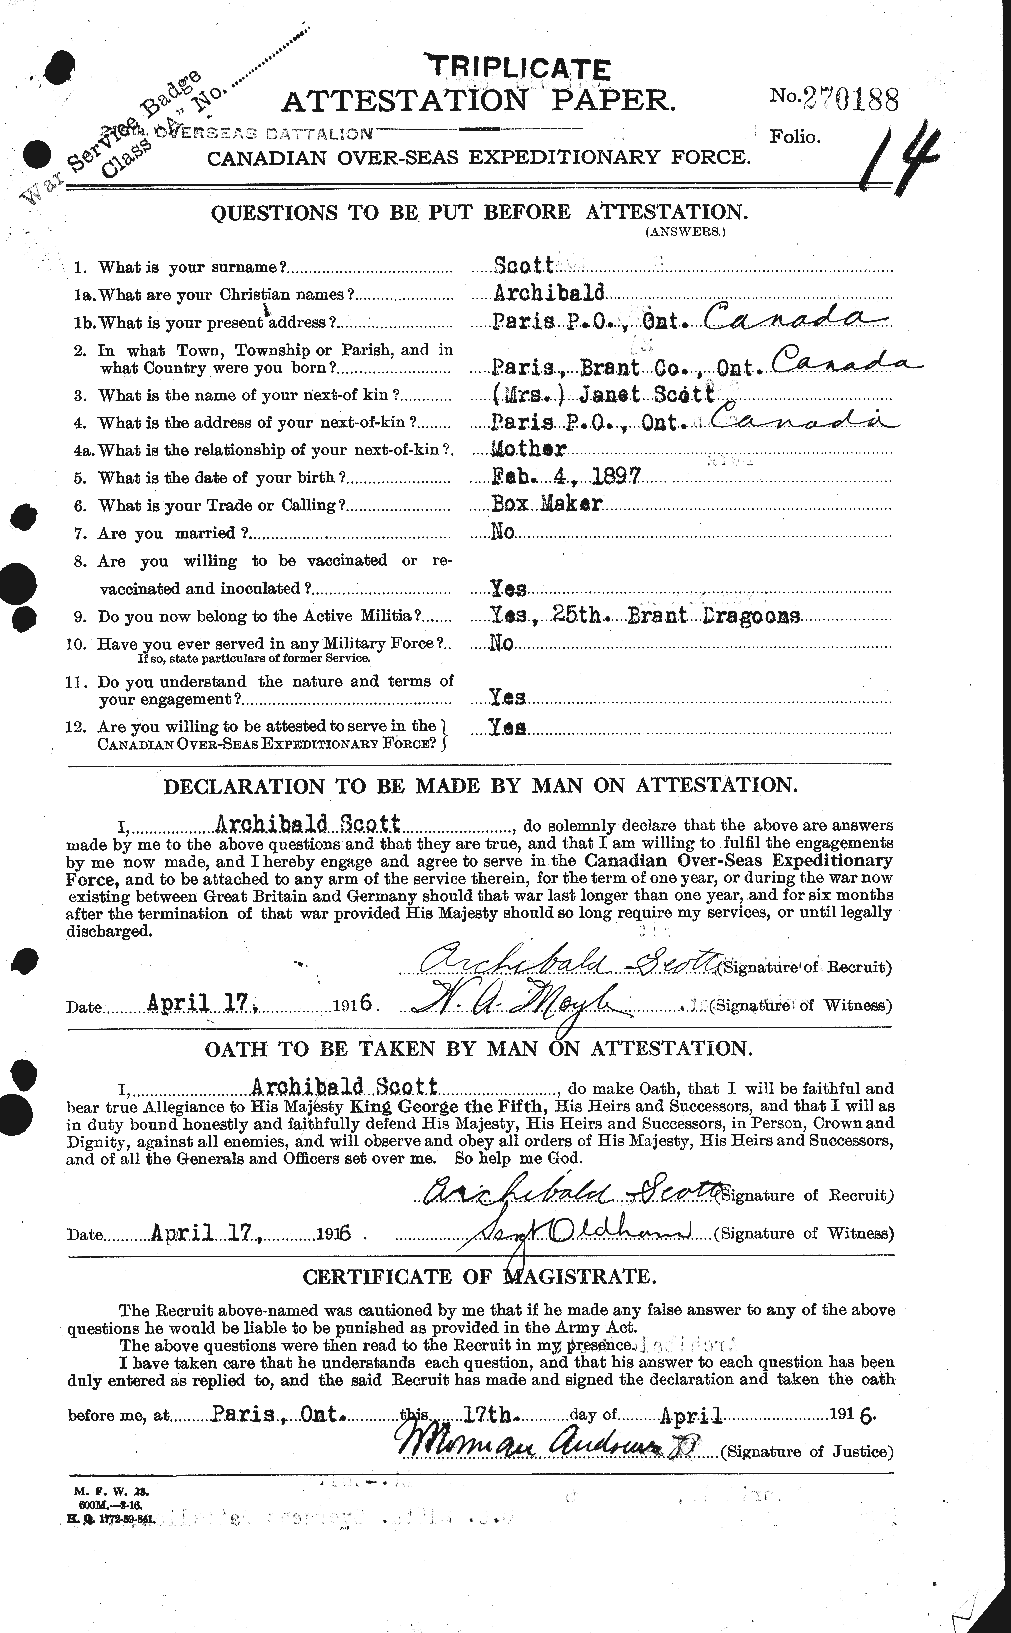 Dossiers du Personnel de la Première Guerre mondiale - CEC 086430a